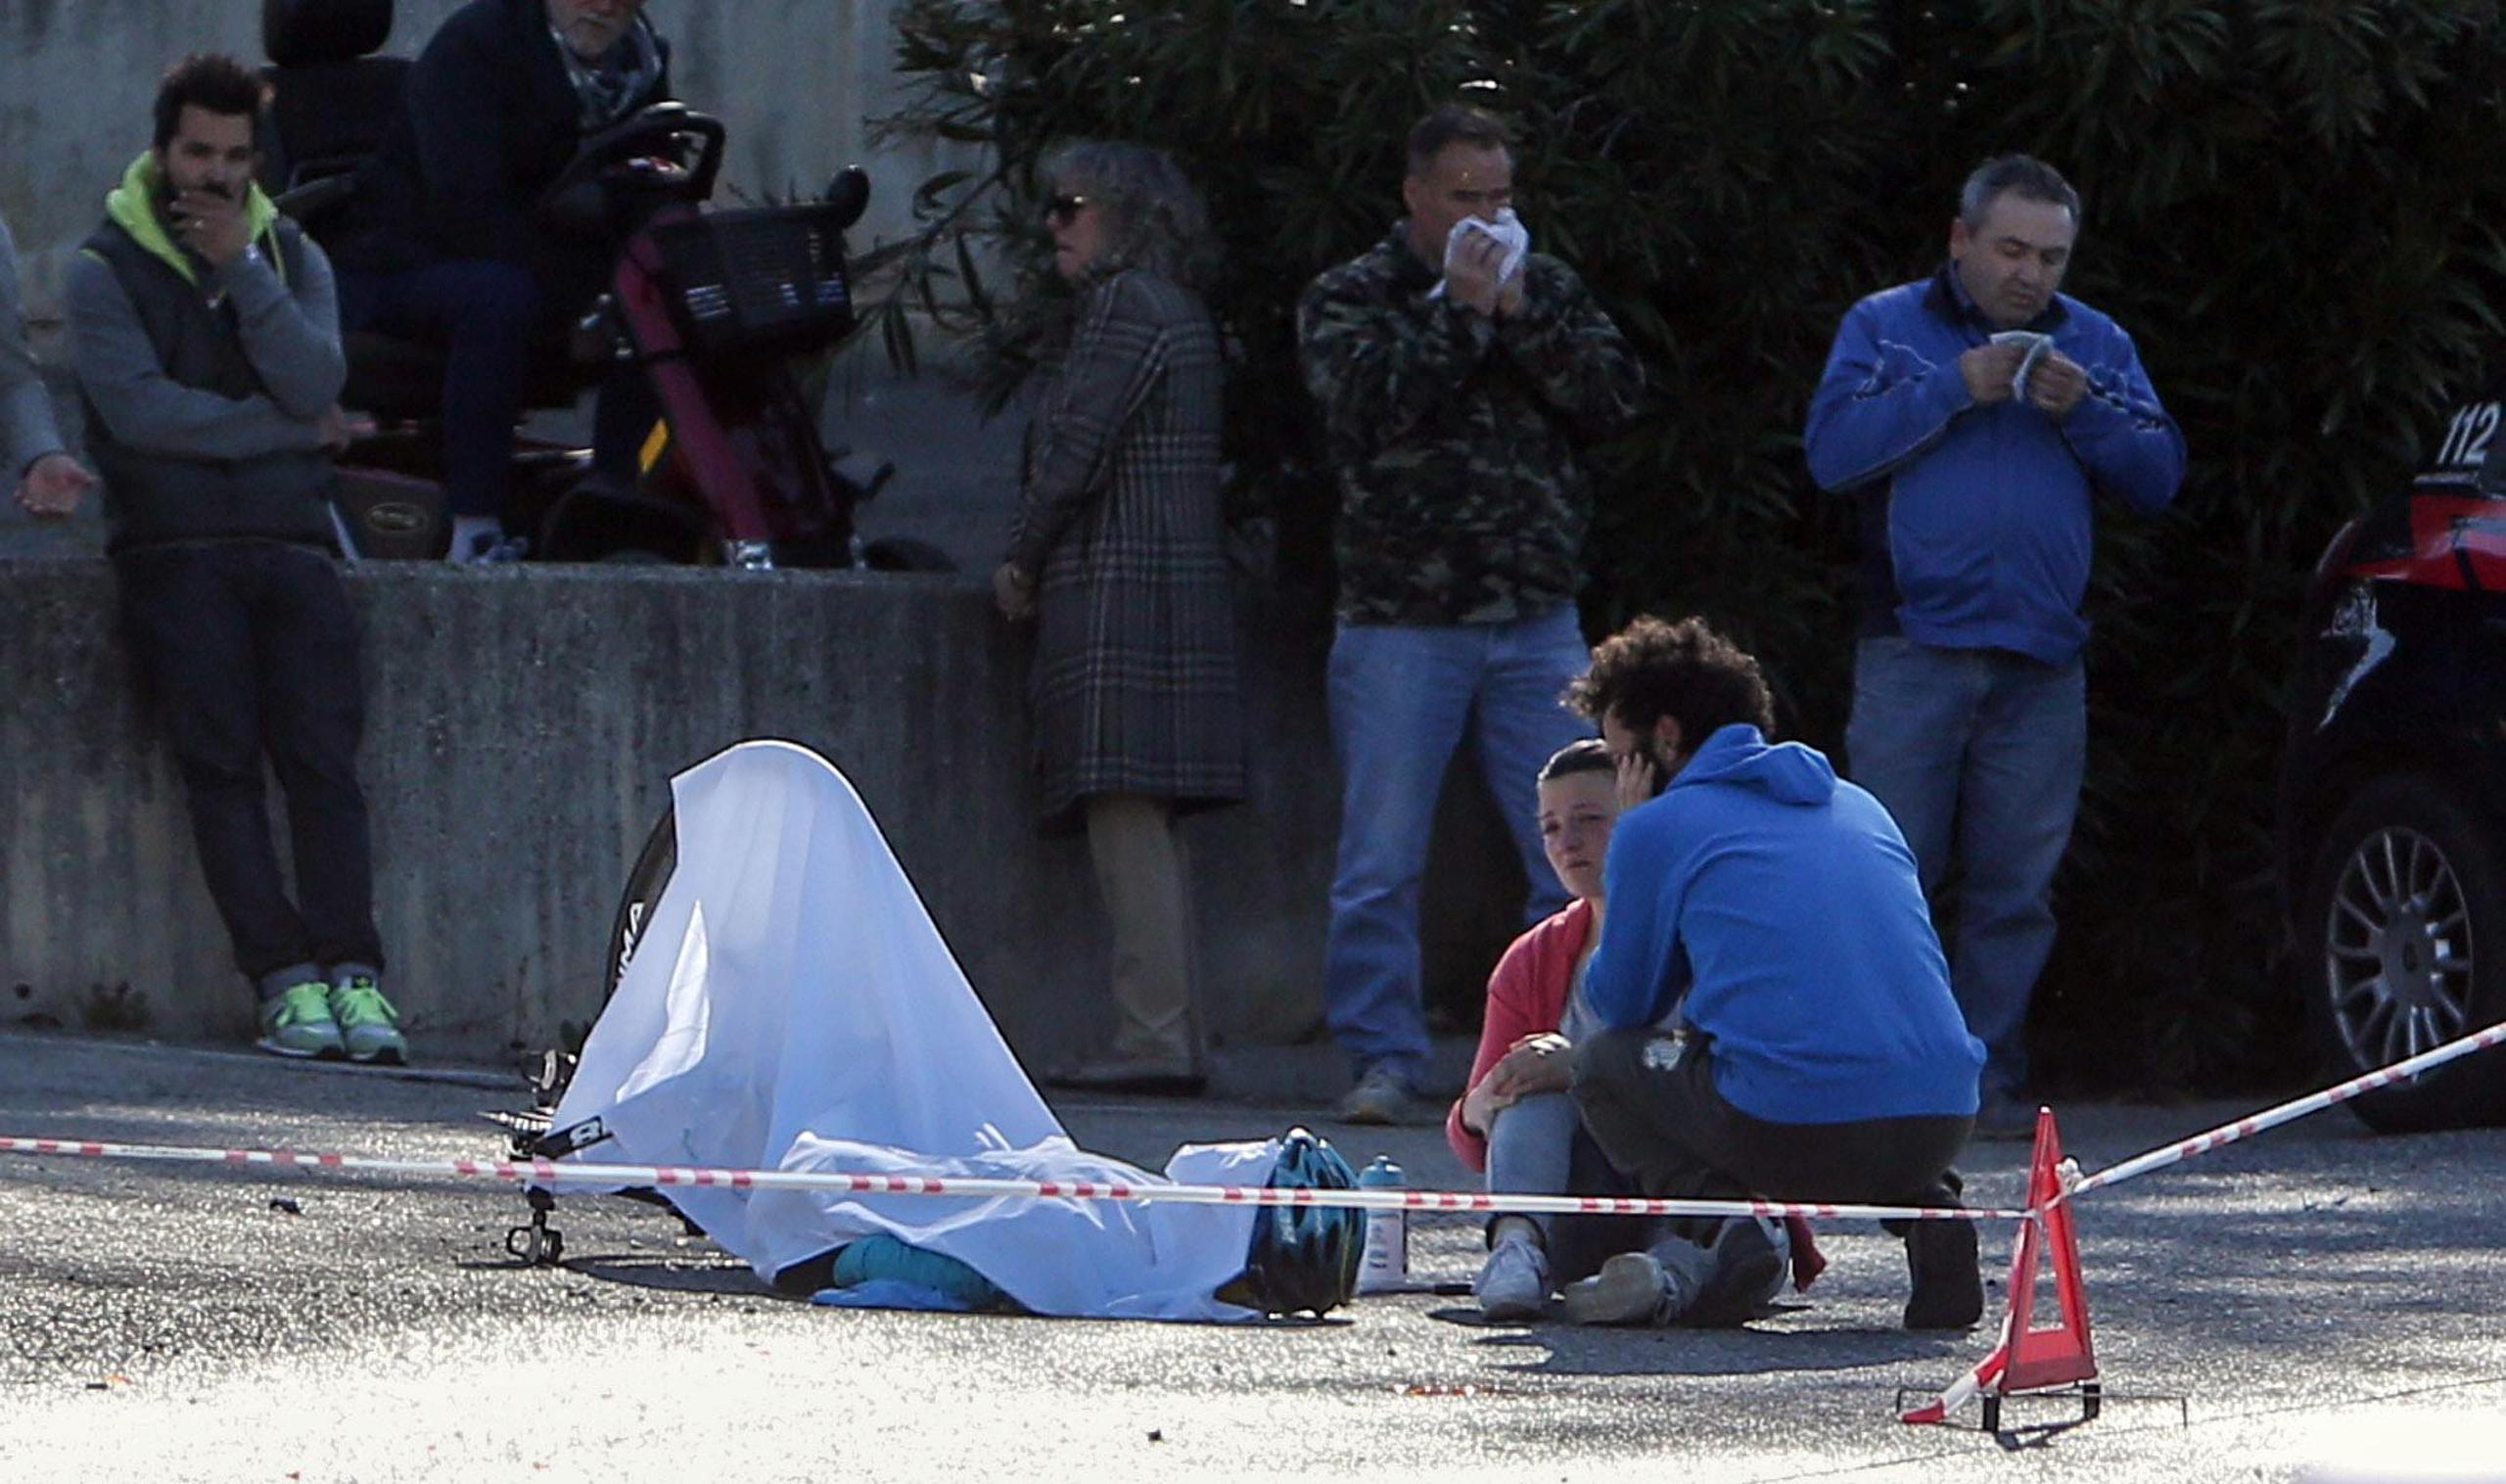 El cuerpo de Michele Scarponi cubierto con una sábana blanca luego del accidente. (AP / ANSA / Cristian Ballarini)